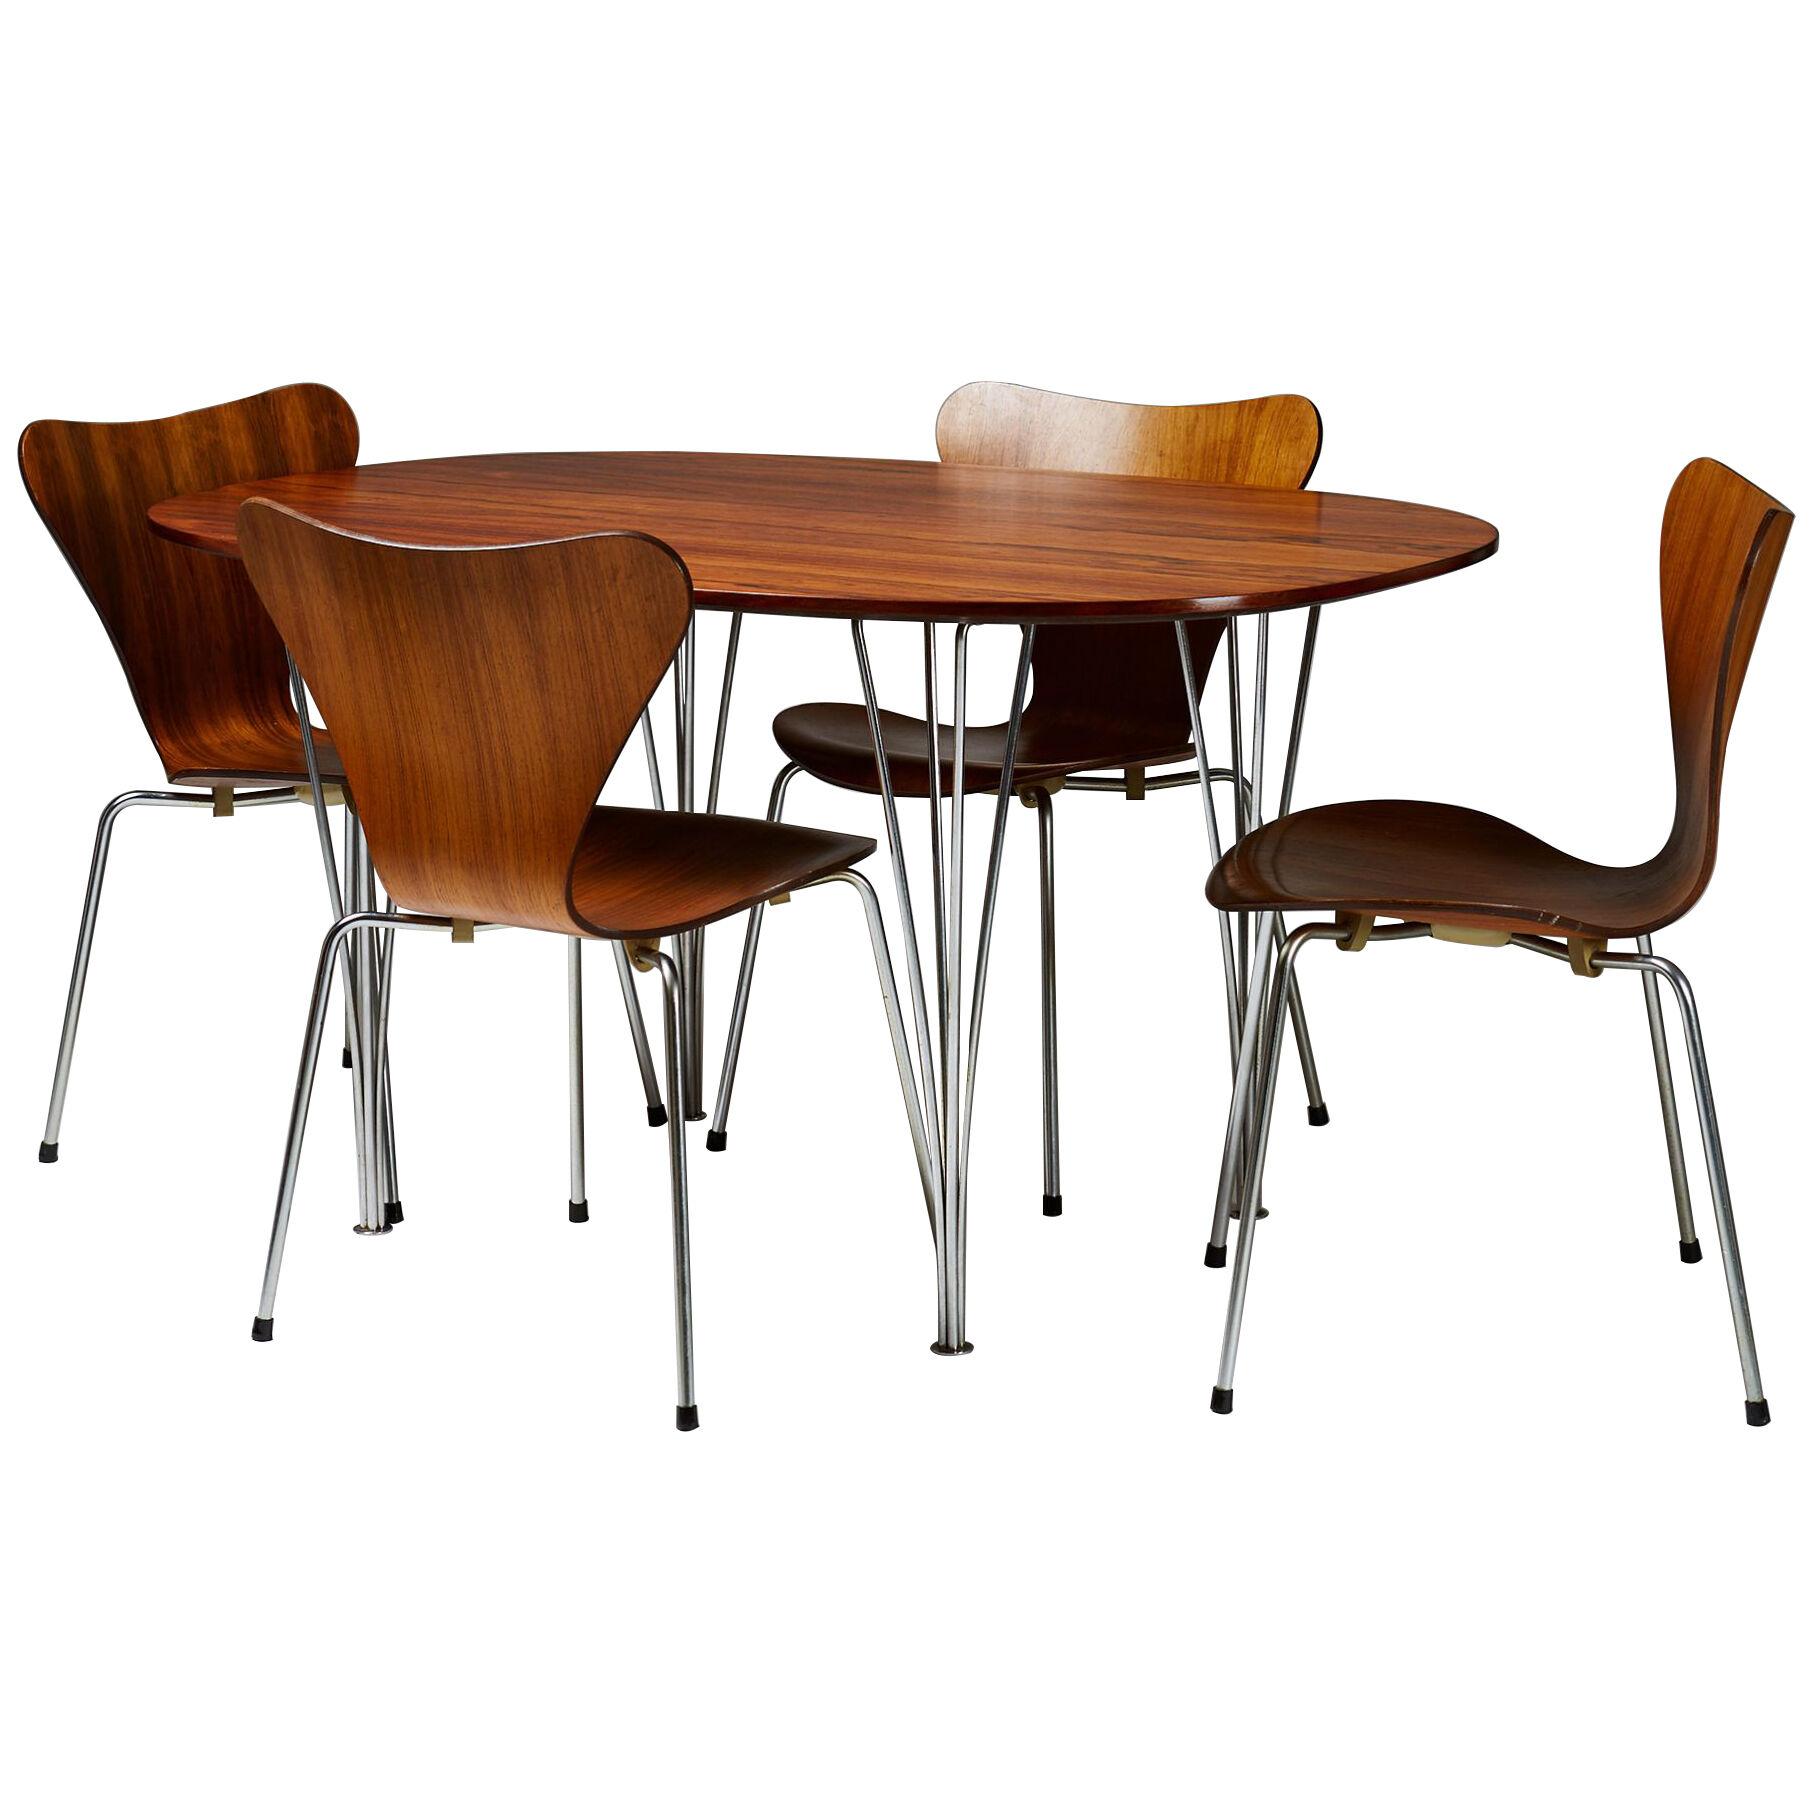 Dining set designed by Bruno Mathsson, Piet Hein and Arne Jacobsen